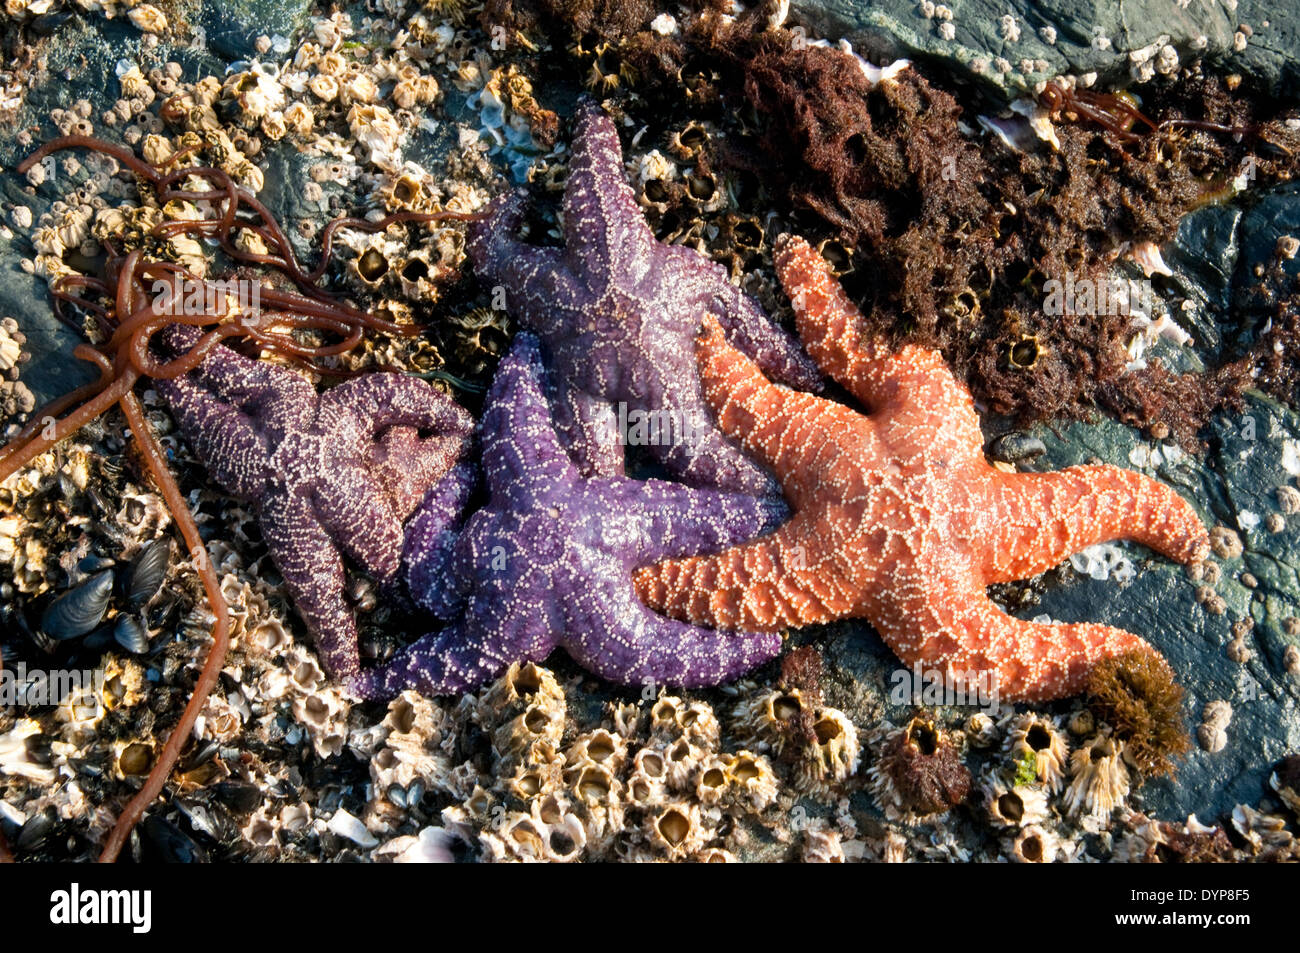 Un gruppo di coloratissime stelle marine sulle rocce ricoperte di barnacolo in una zona intercorrente dell'Oceano Pacifico nella Great Bear Rainforest, British Columbia, Canada. Foto Stock